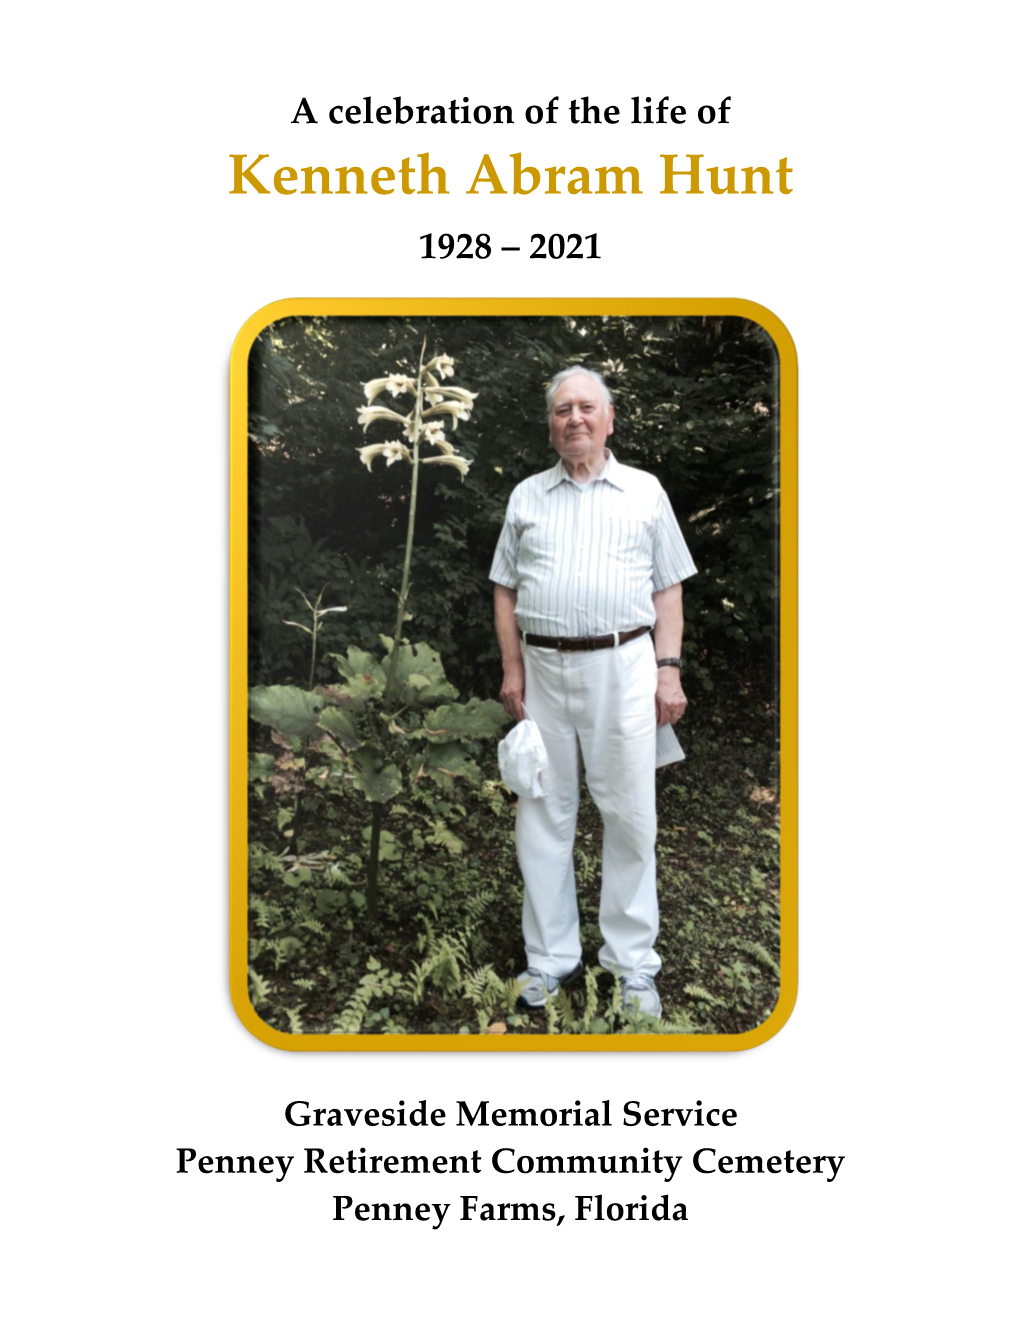 Kenneth Abram Hunt